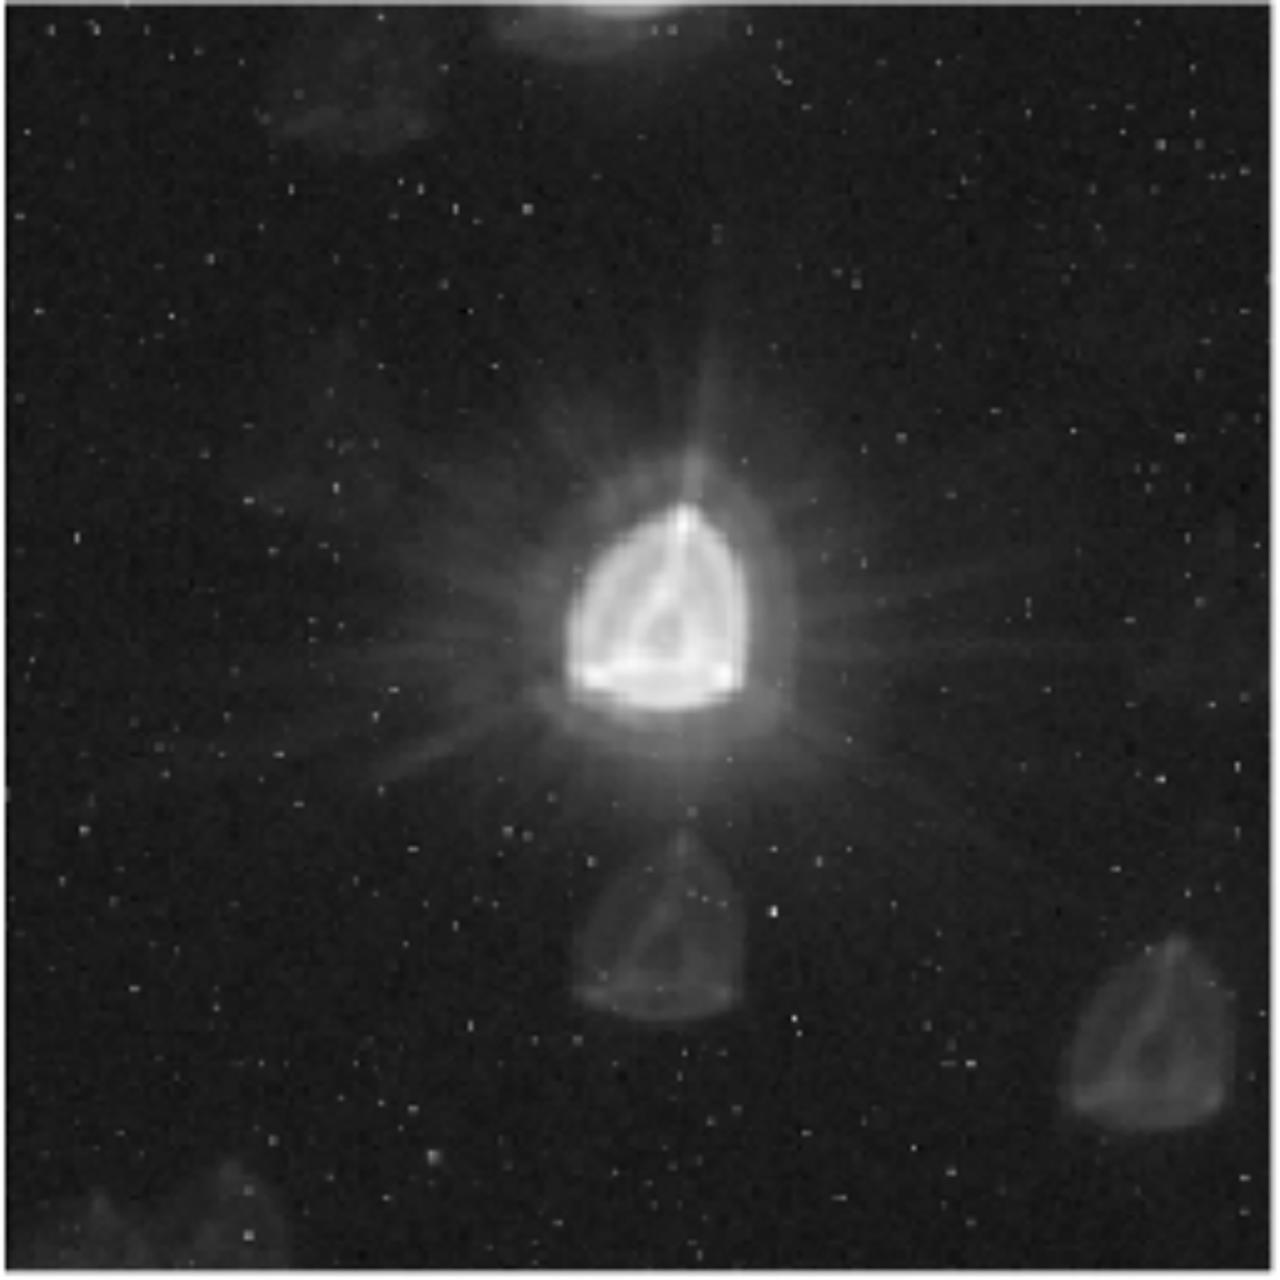 Imagen de CHEOPS de la estrella HD 88111. Crédito: ESA/Airbus/CHEOPS Mission Consortium